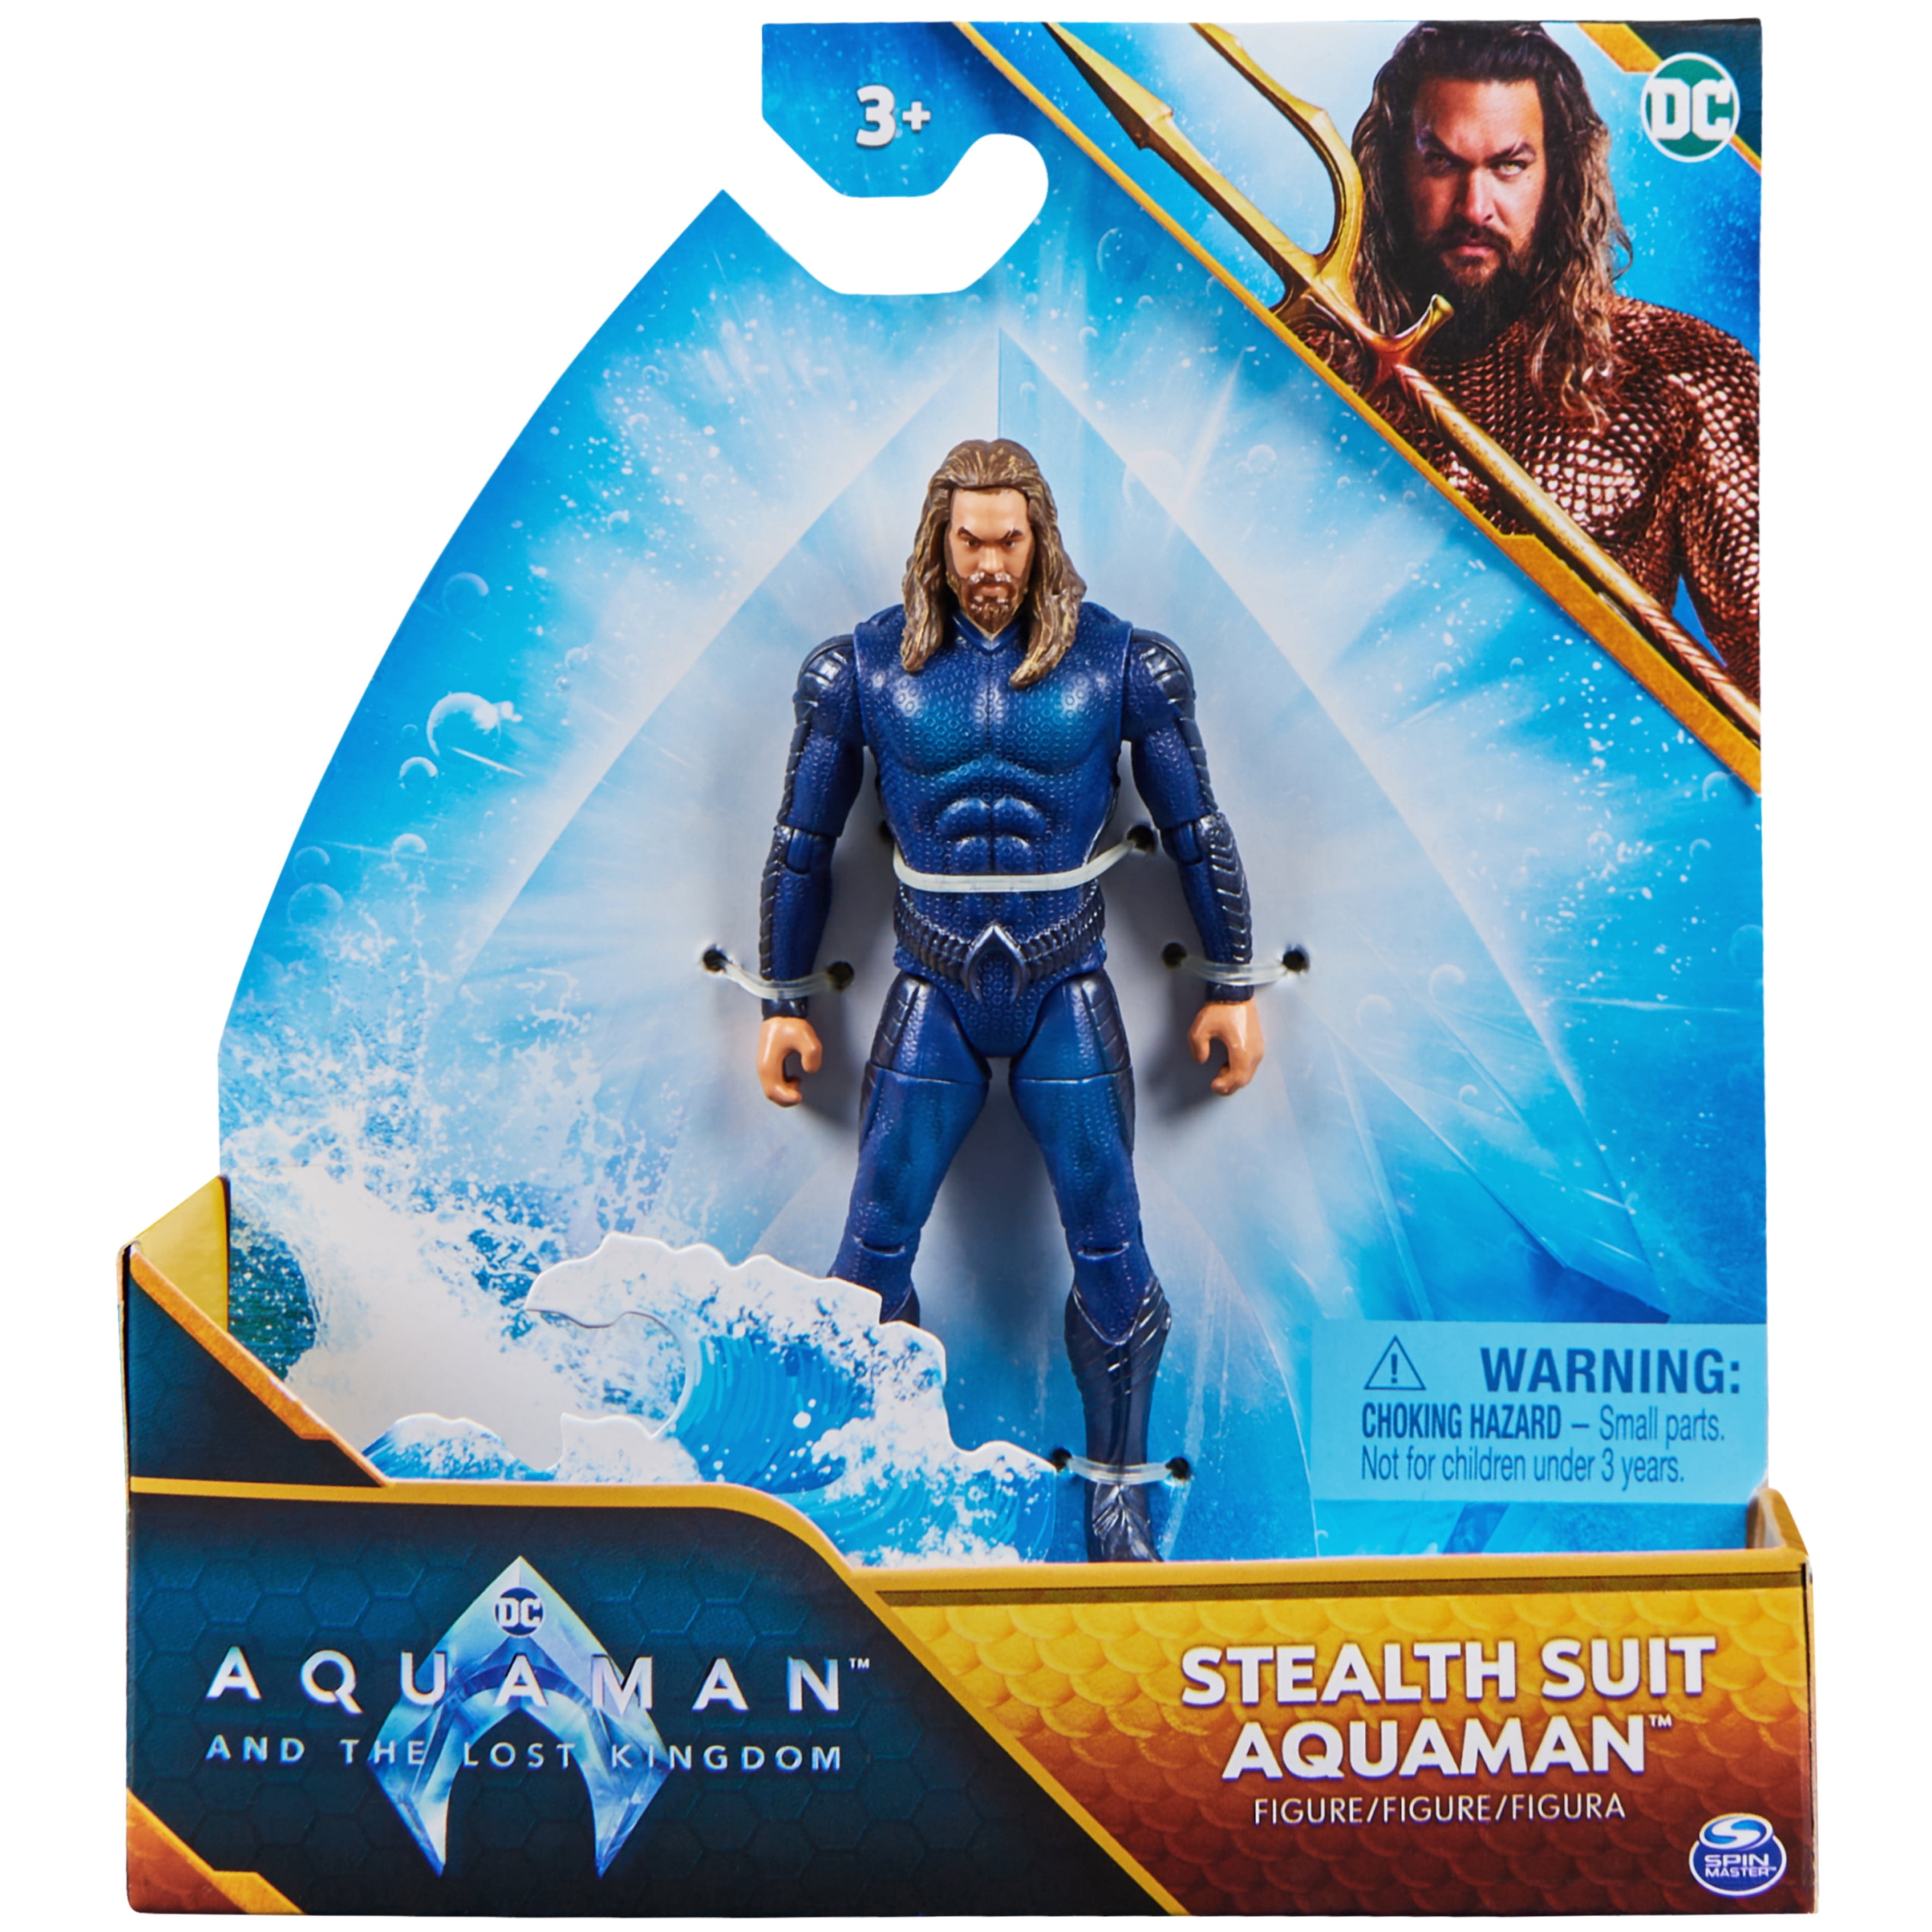 Warner Bros. 'Aquaman' Walmart Floorstand